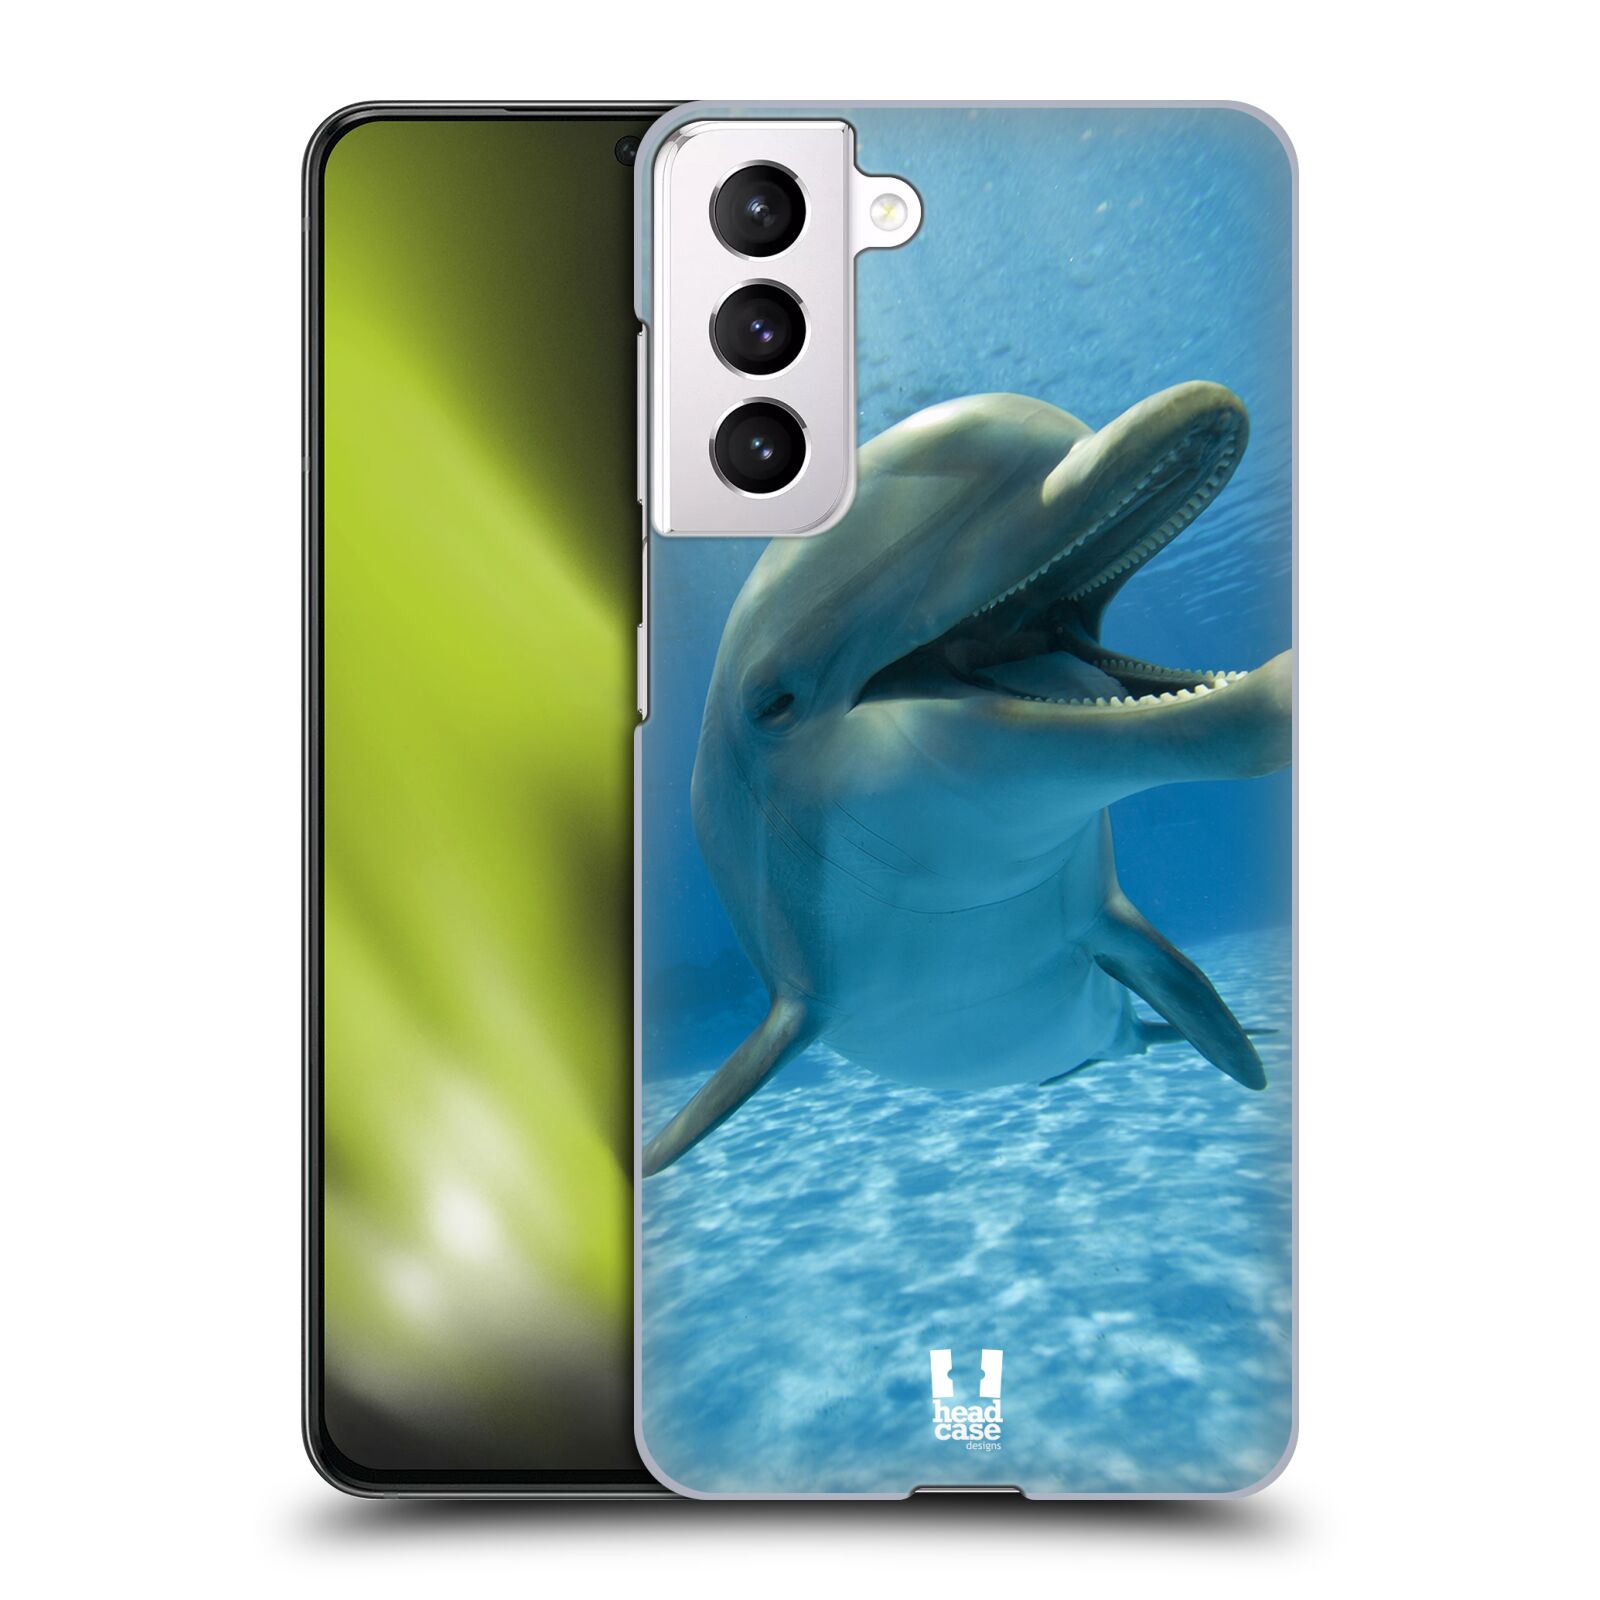 Zadní obal pro mobil Samsung Galaxy S21 / S21 5G - HEAD CASE - Svět zvířat delfín v moři